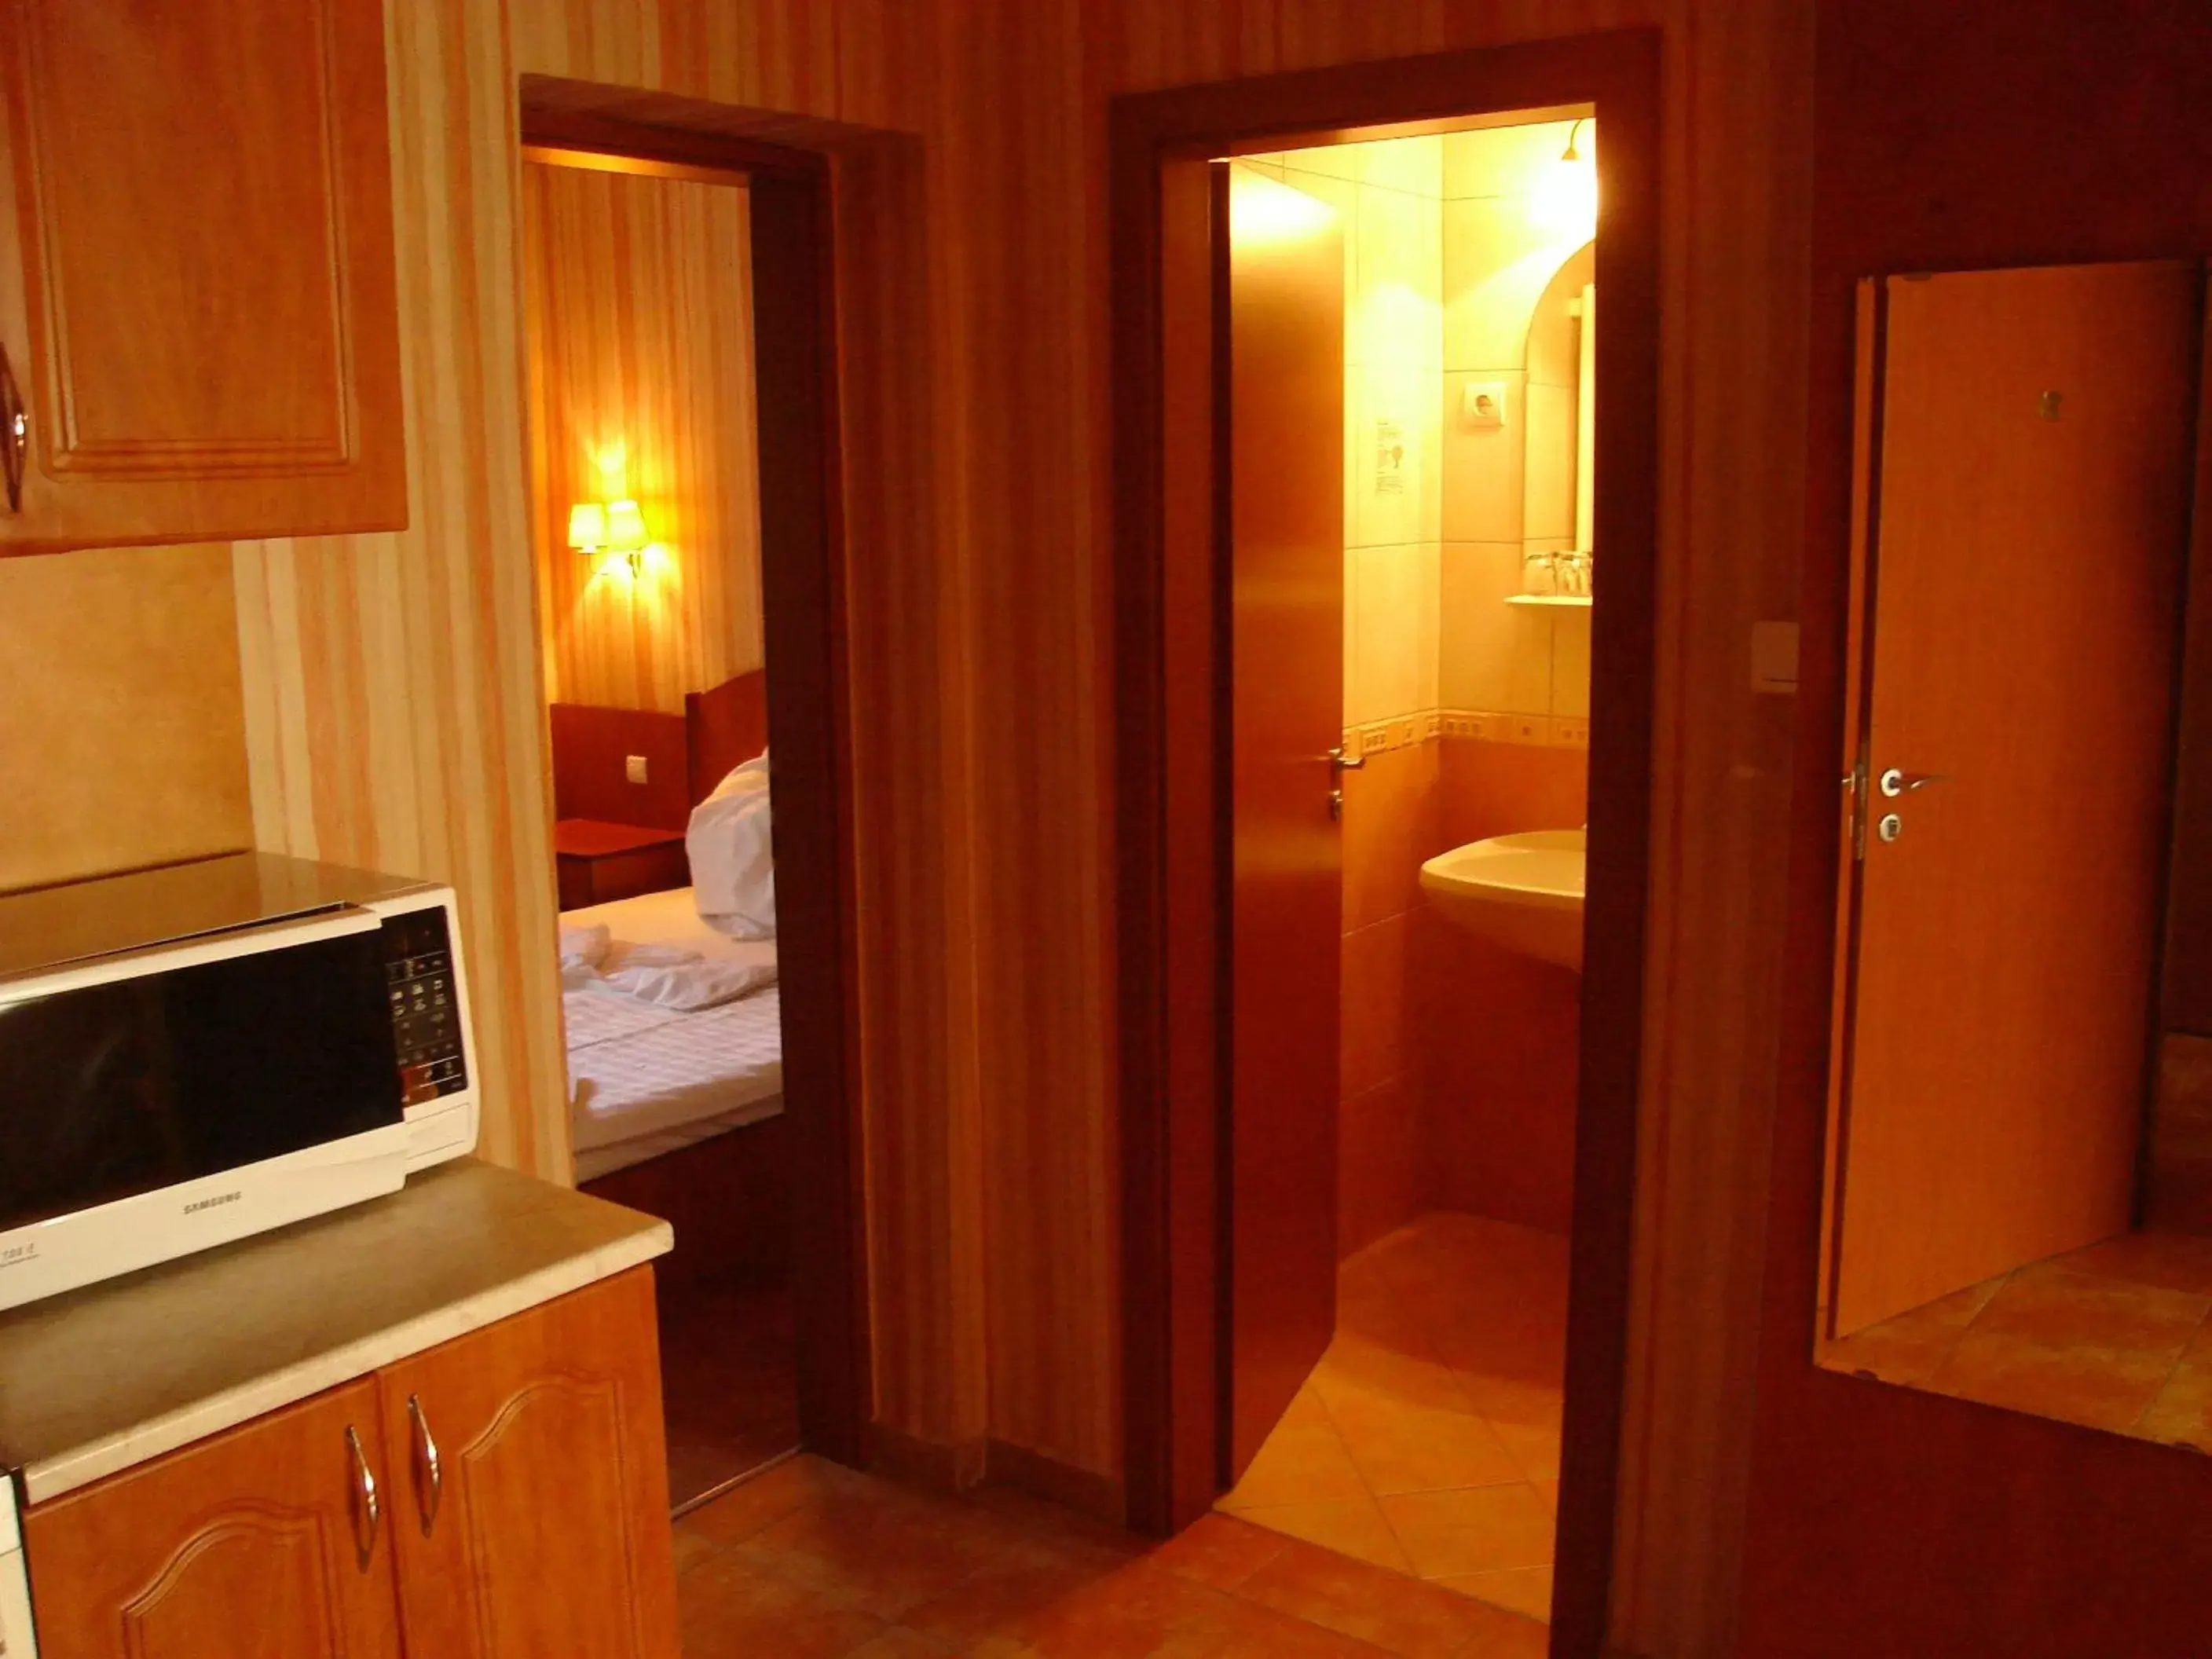 Bedroom, Bathroom in Beatrix Hotel